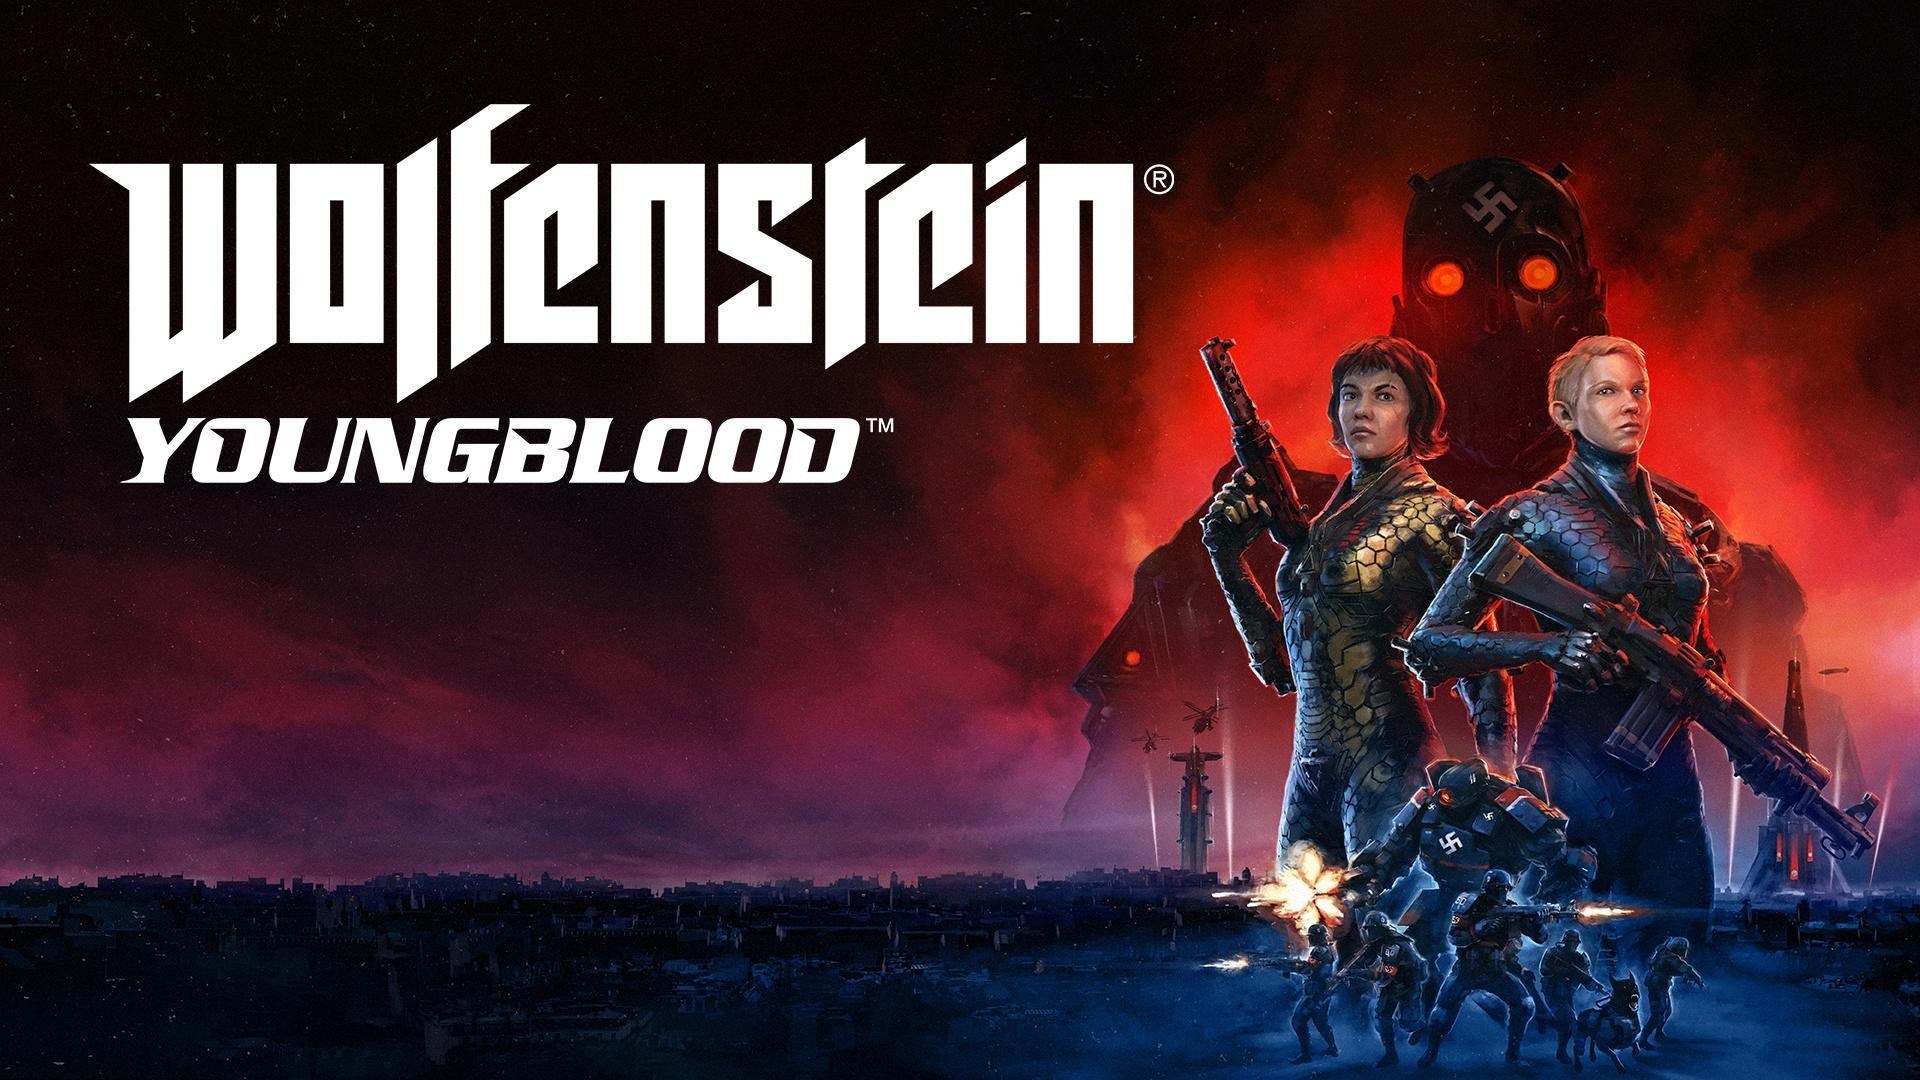 Wolfenstein: Youngblood. PC Bethesda Game